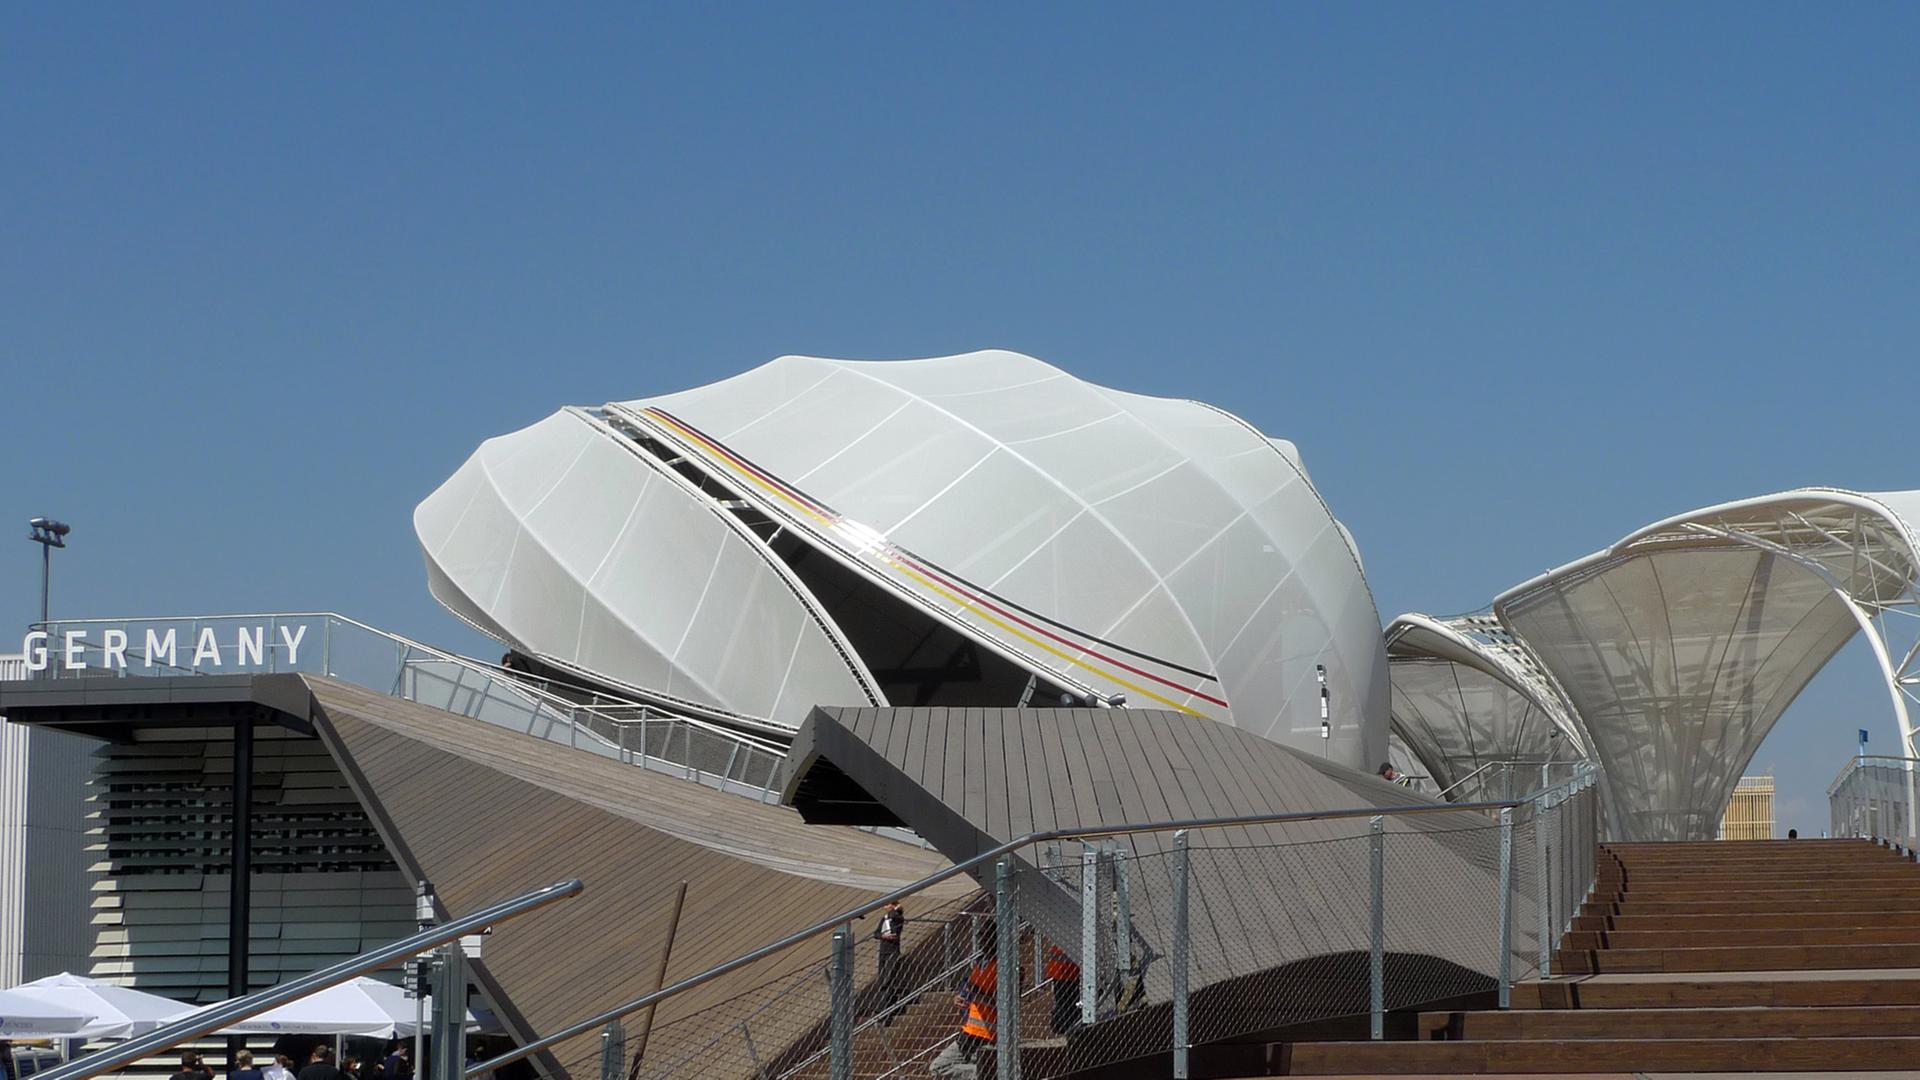 Der deutsche Pavillon bei der Expo in Mailand (Italien), aufgenommen am 23.04. 2015.